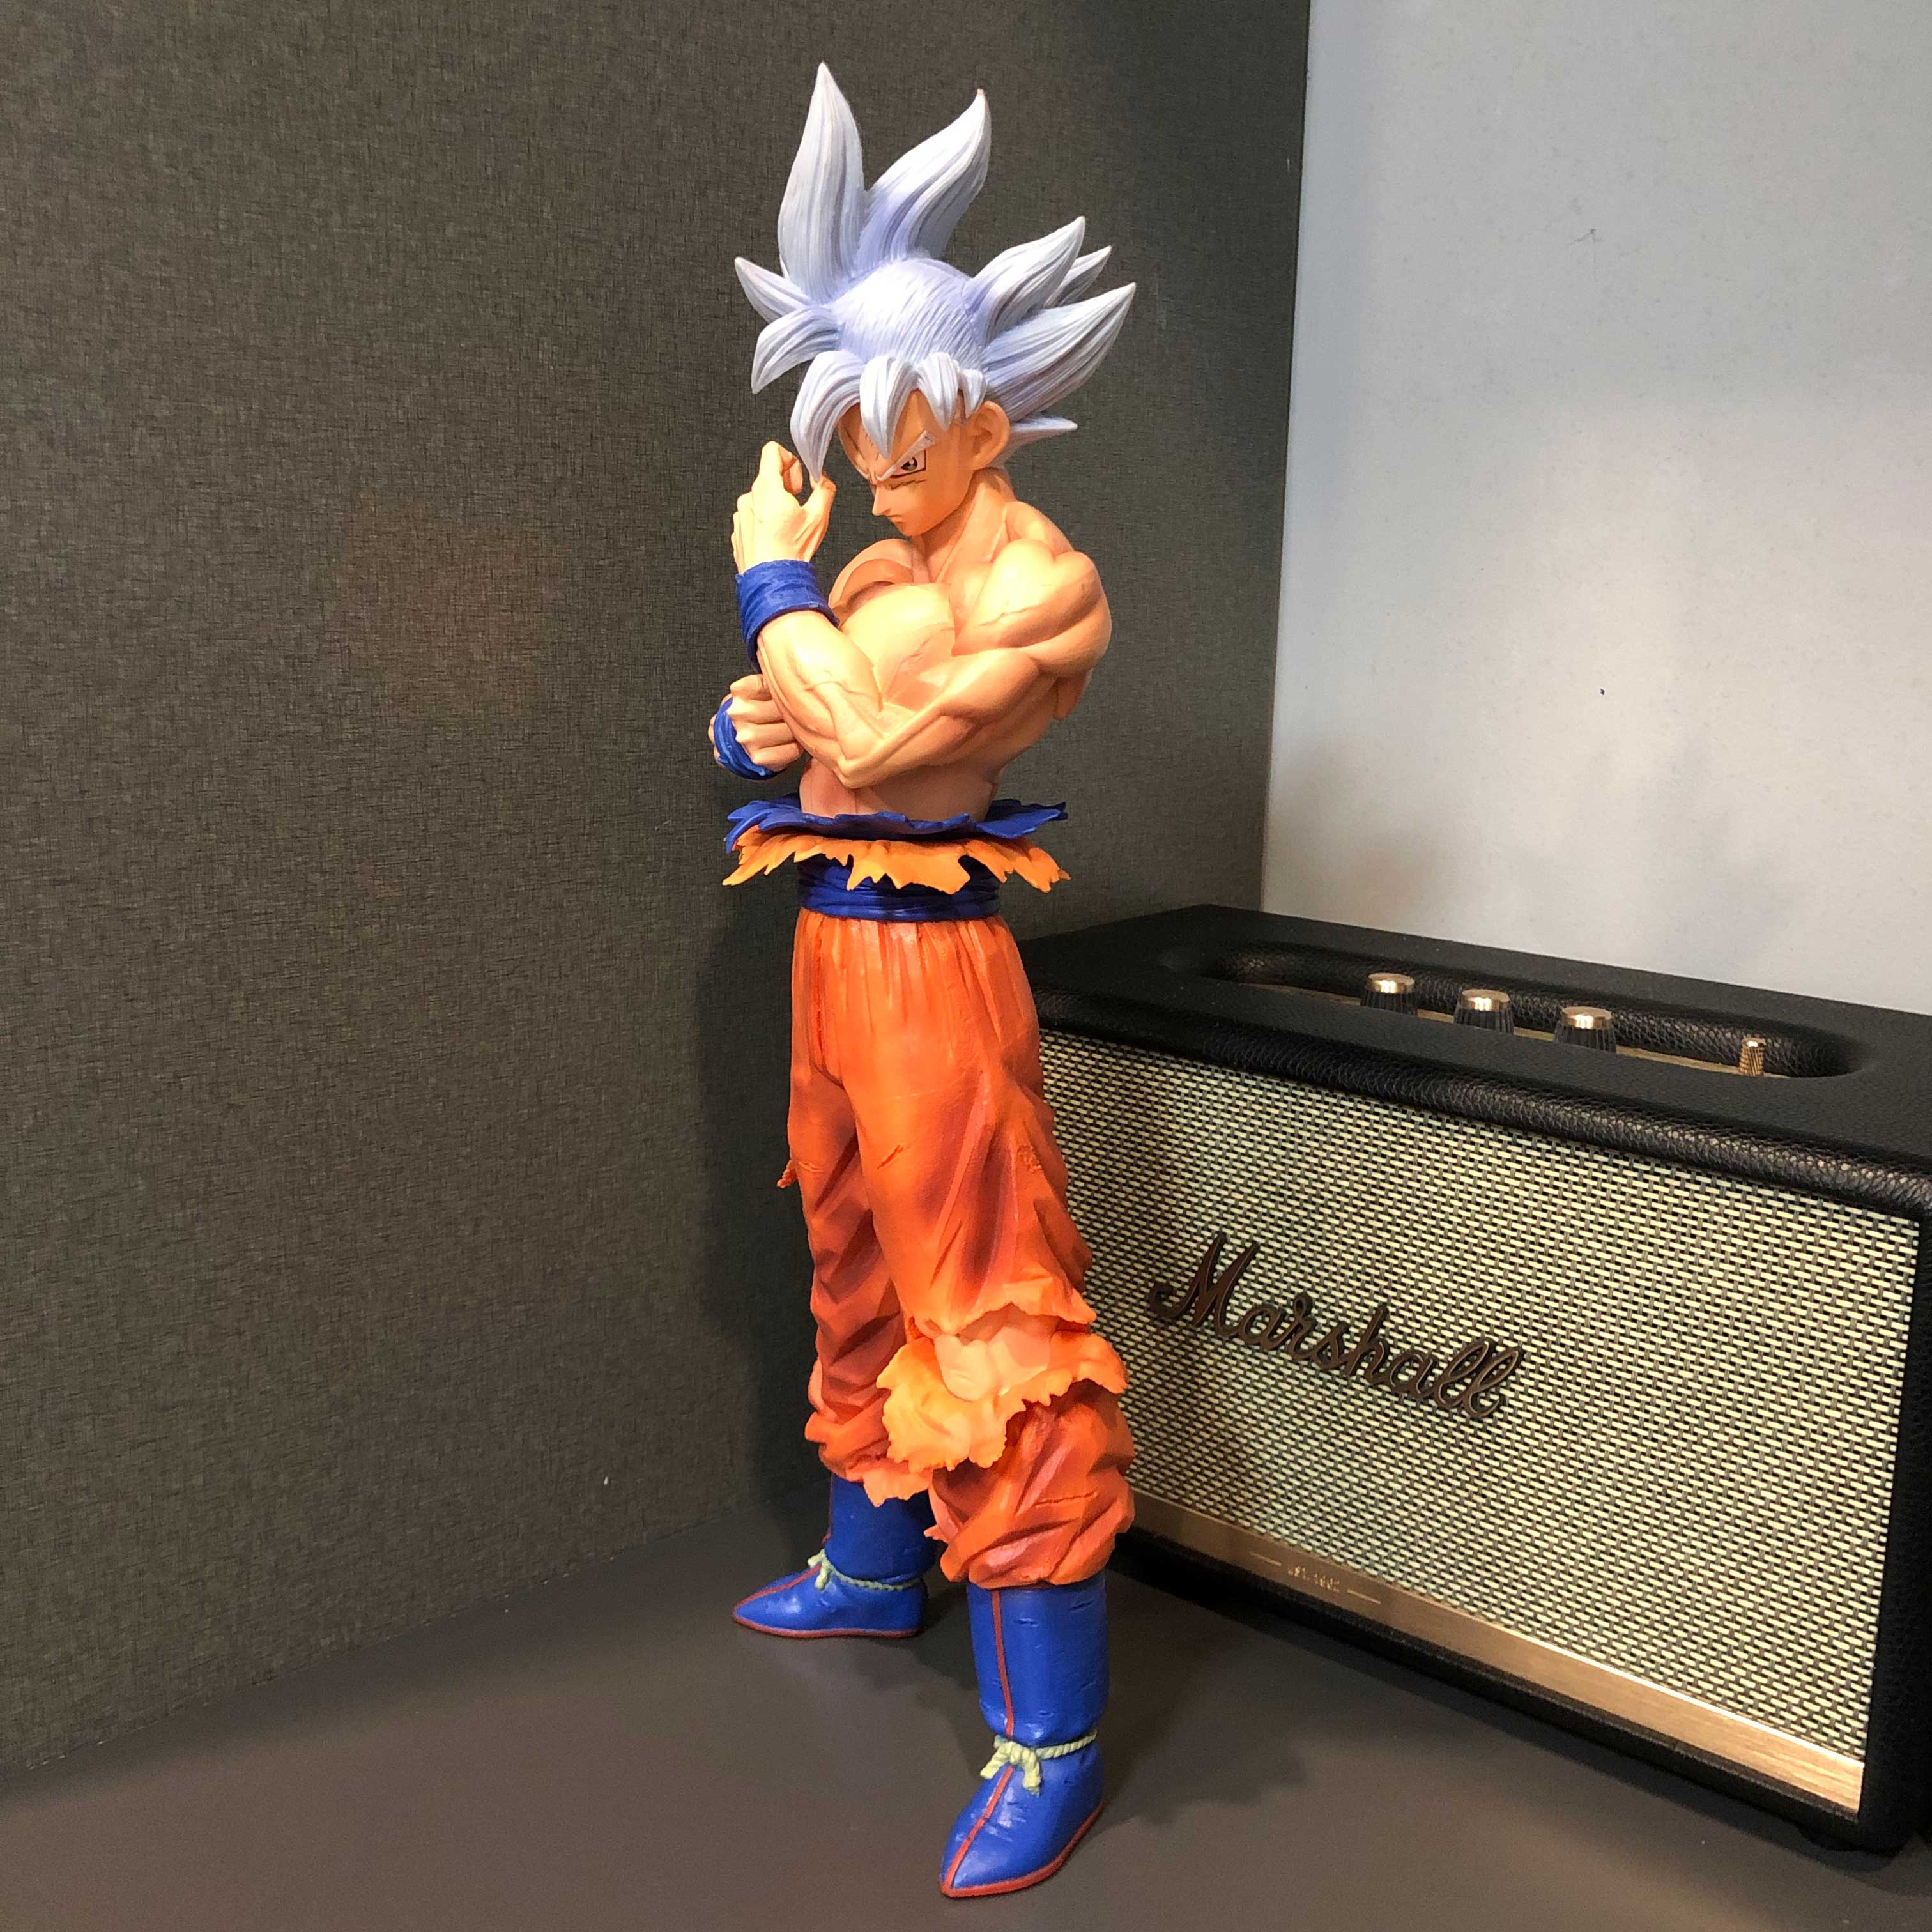 Mô hình Son Goku bản năng vô cực 2 đầu 44 cm - Dragon Ball